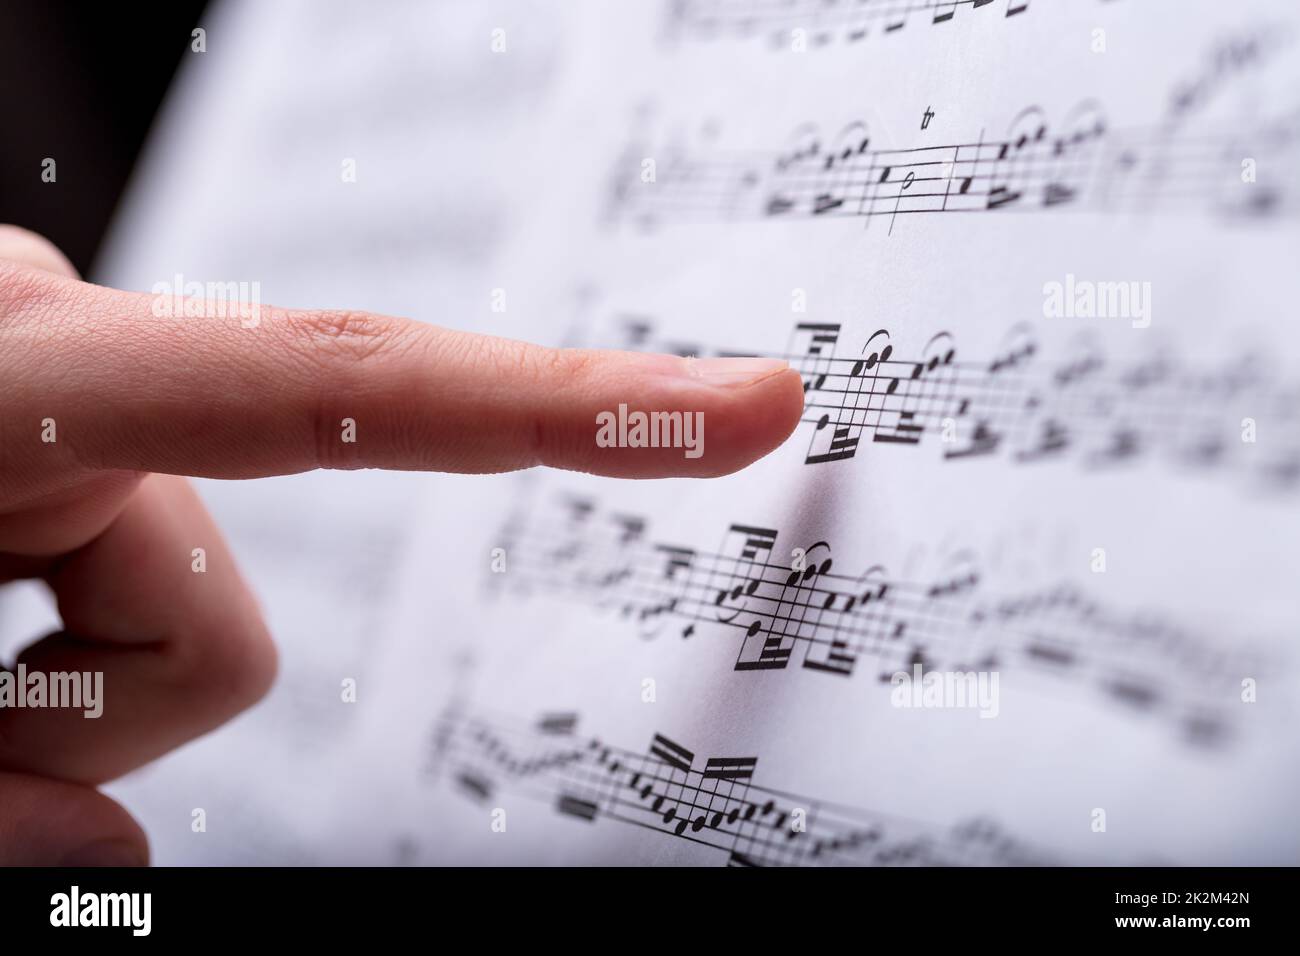 Notizen zu einem Musical, das mit dem Finger entdeckt wurde Stockfoto